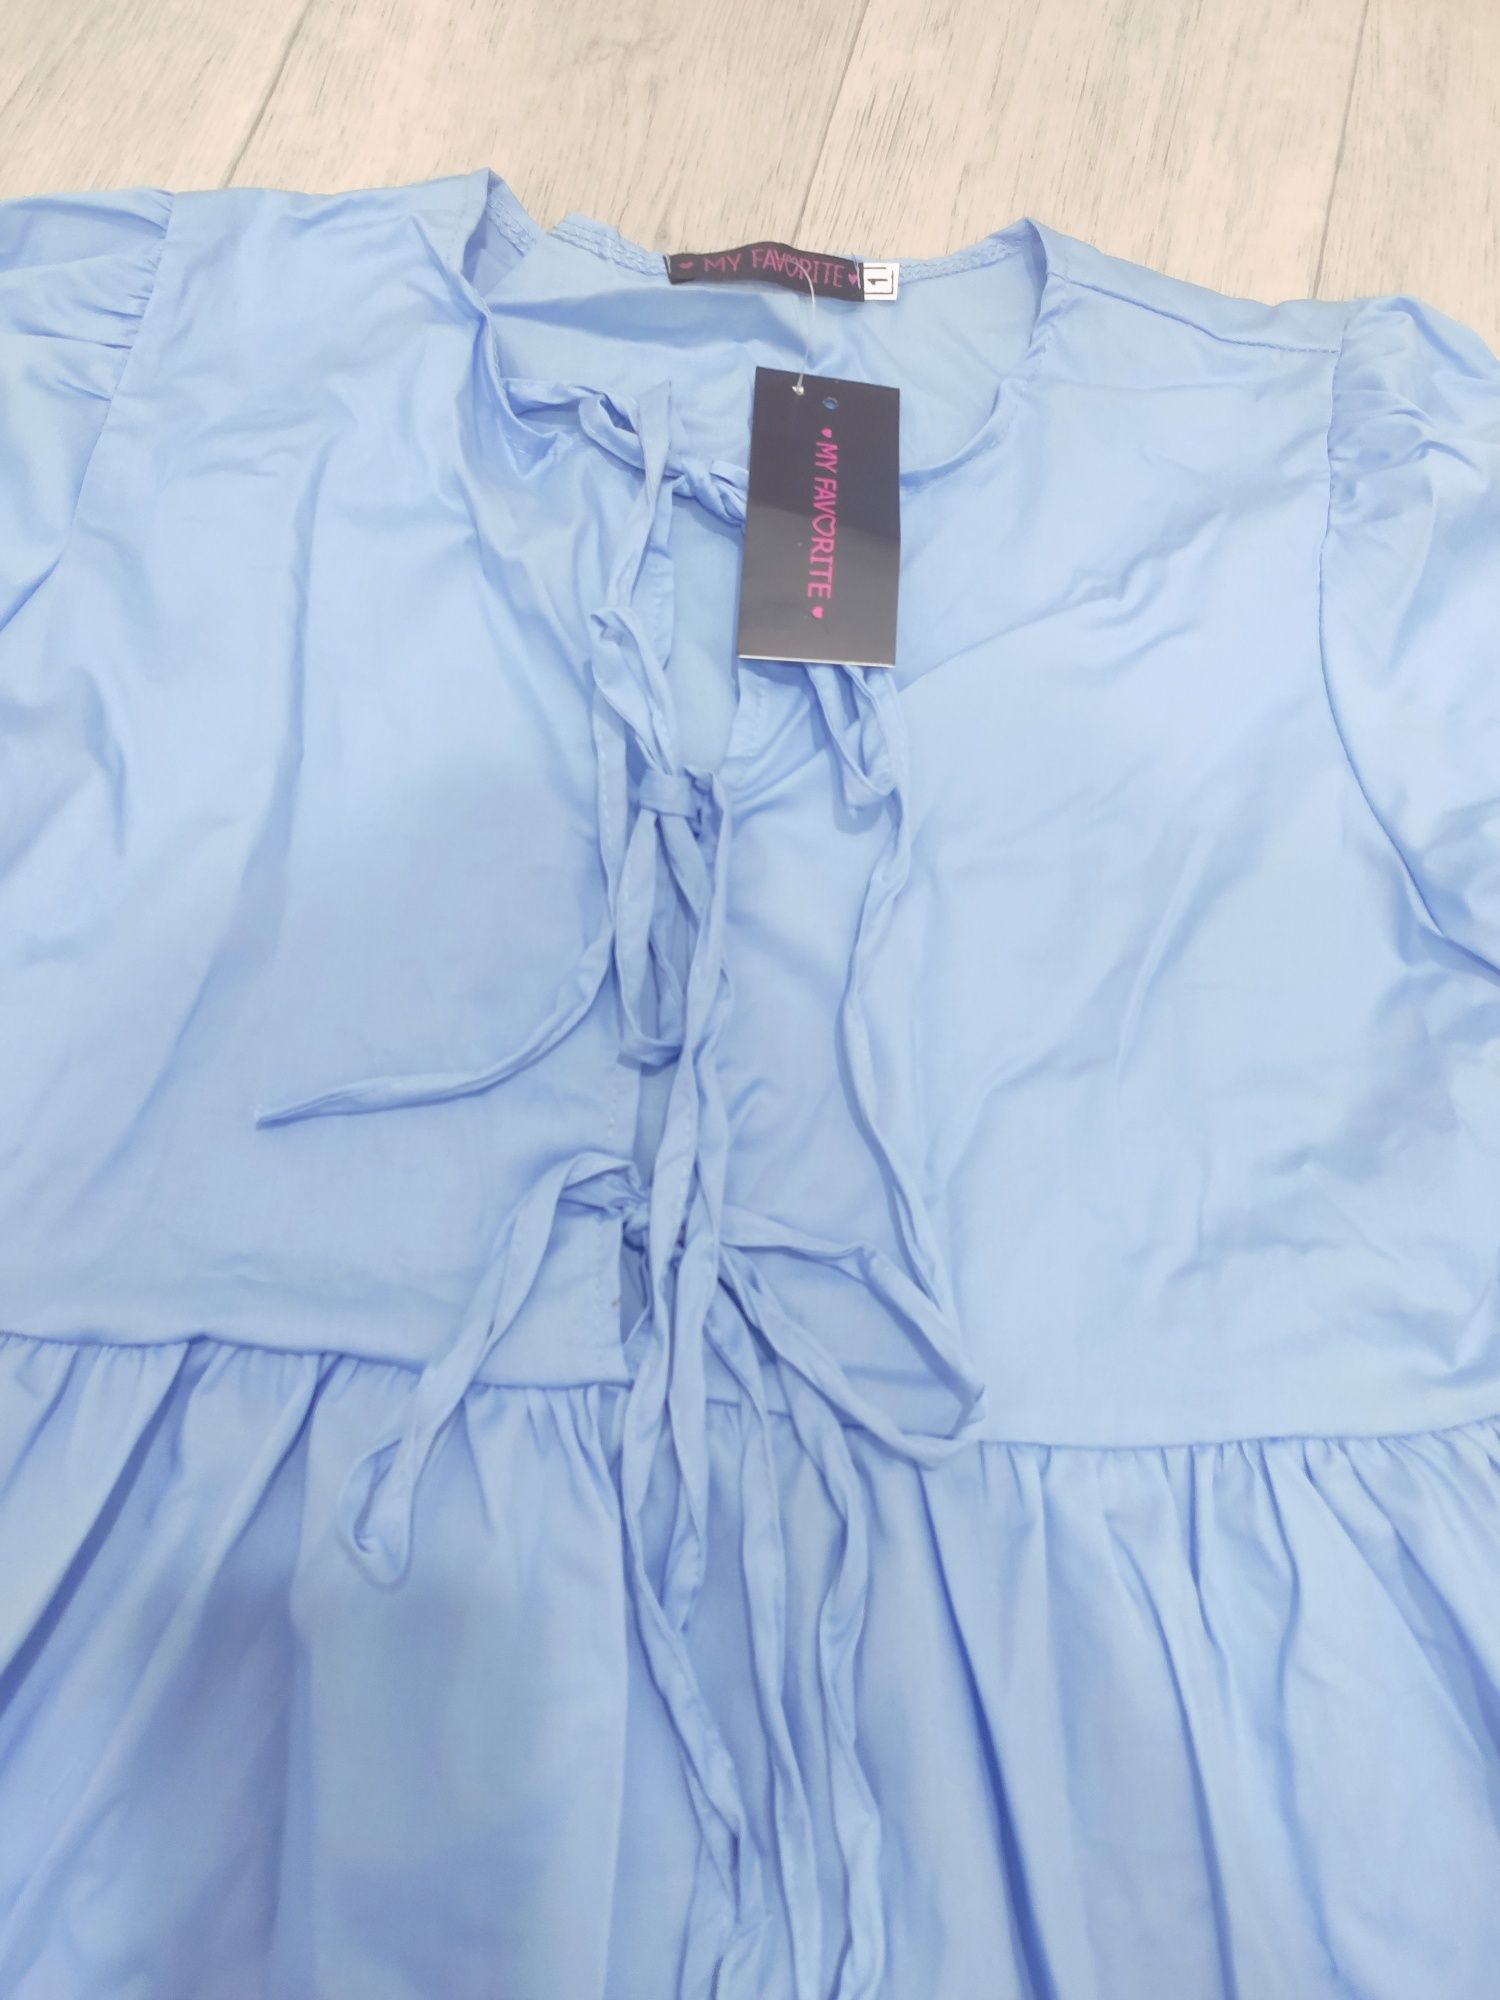 Платье женское голубое лёгкое летние